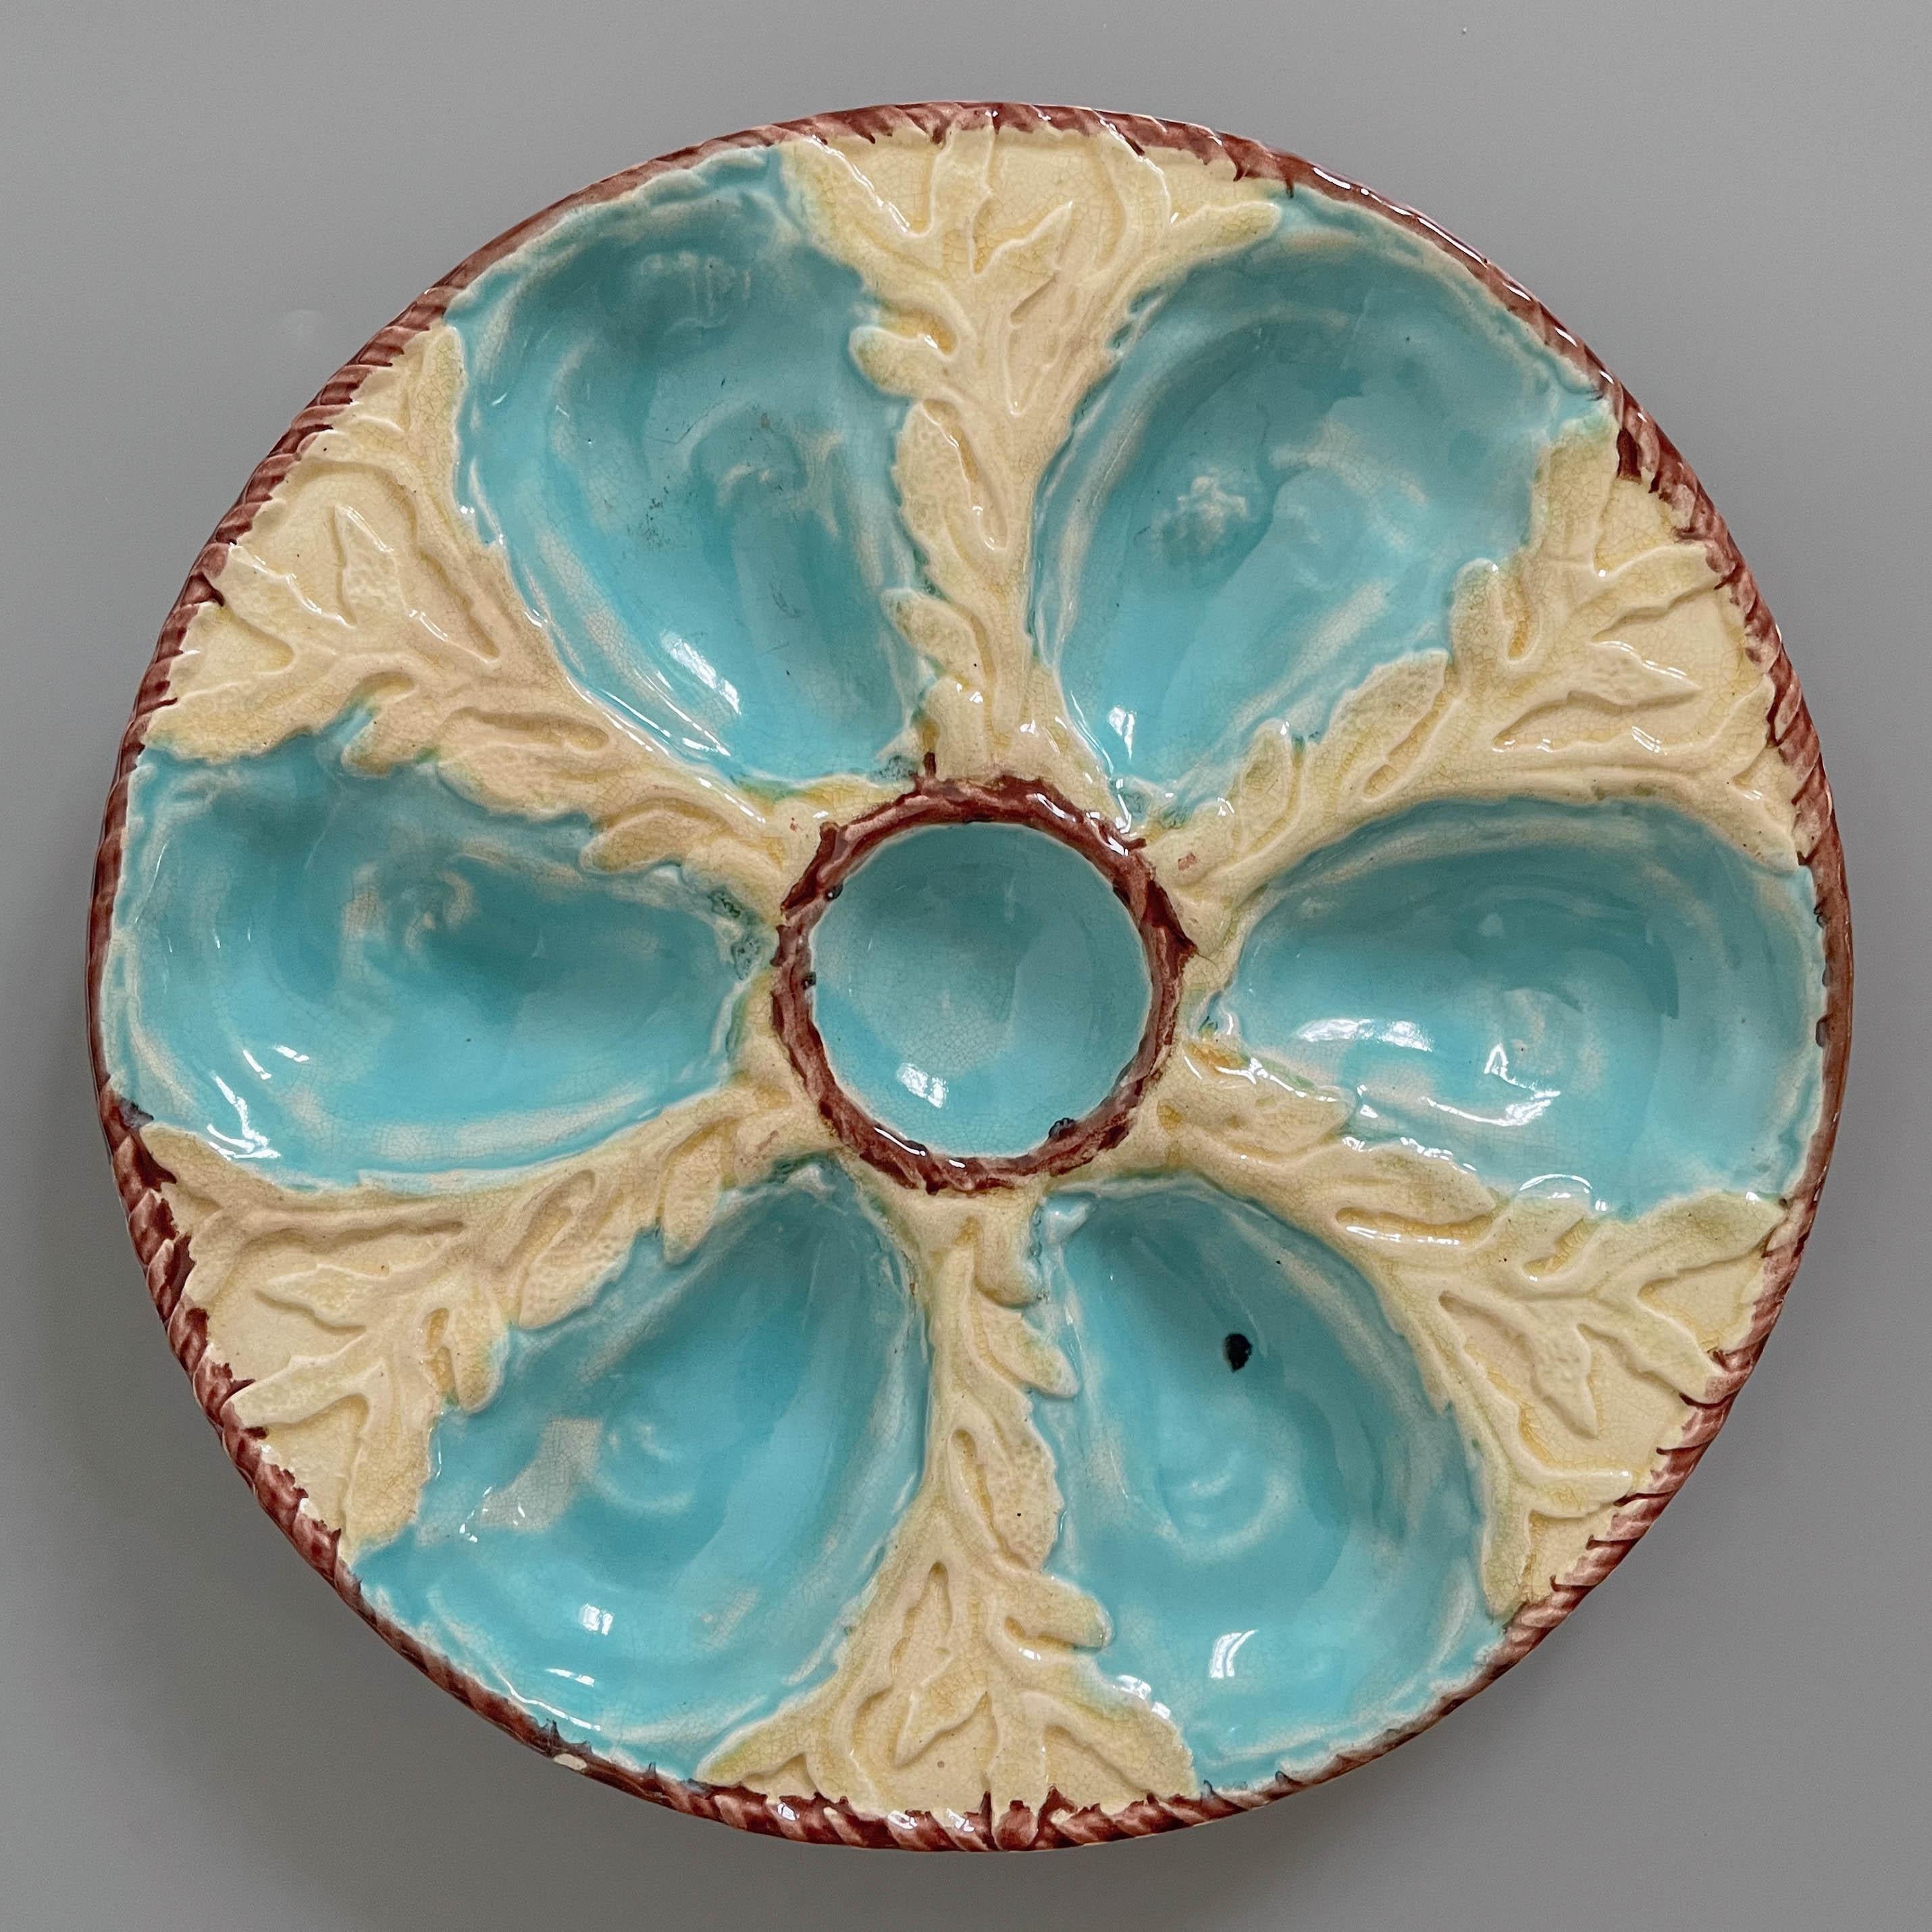 Ein englischer glasierter Majolikateller des 19. Jahrhunderts mit sechs türkisblauen Austernmulden, die eine mittlere Mulde für Sauce umgeben, auf gelbem Grund mit Seetangrelief. Eine braune Seileinfassung umgibt die mittlere Vertiefung und den